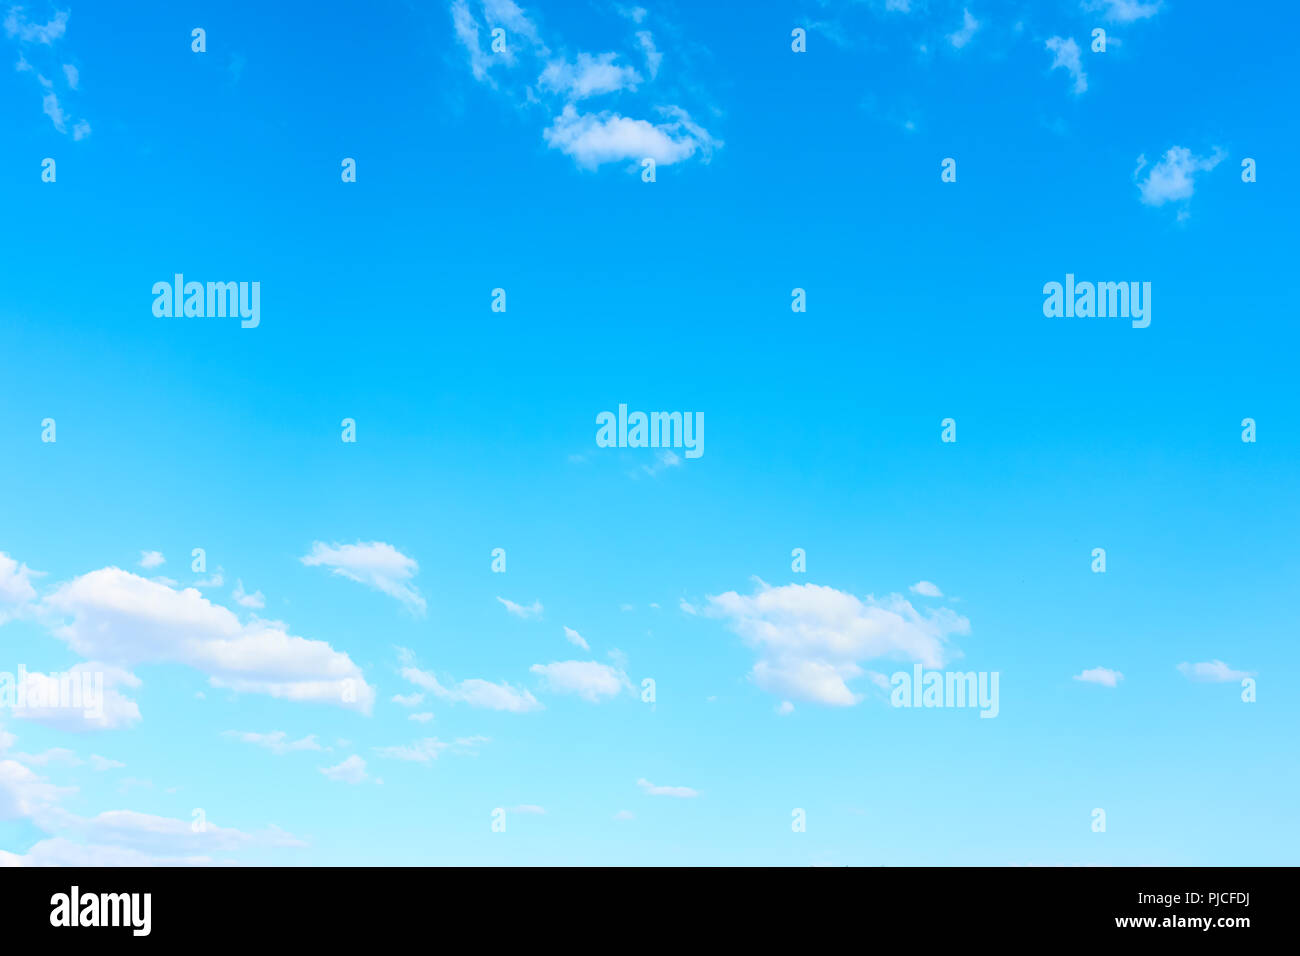 Quasi chiaro cielo blu con nuvole bianche - sfondo con ampio spazio per il tuo testo Foto Stock